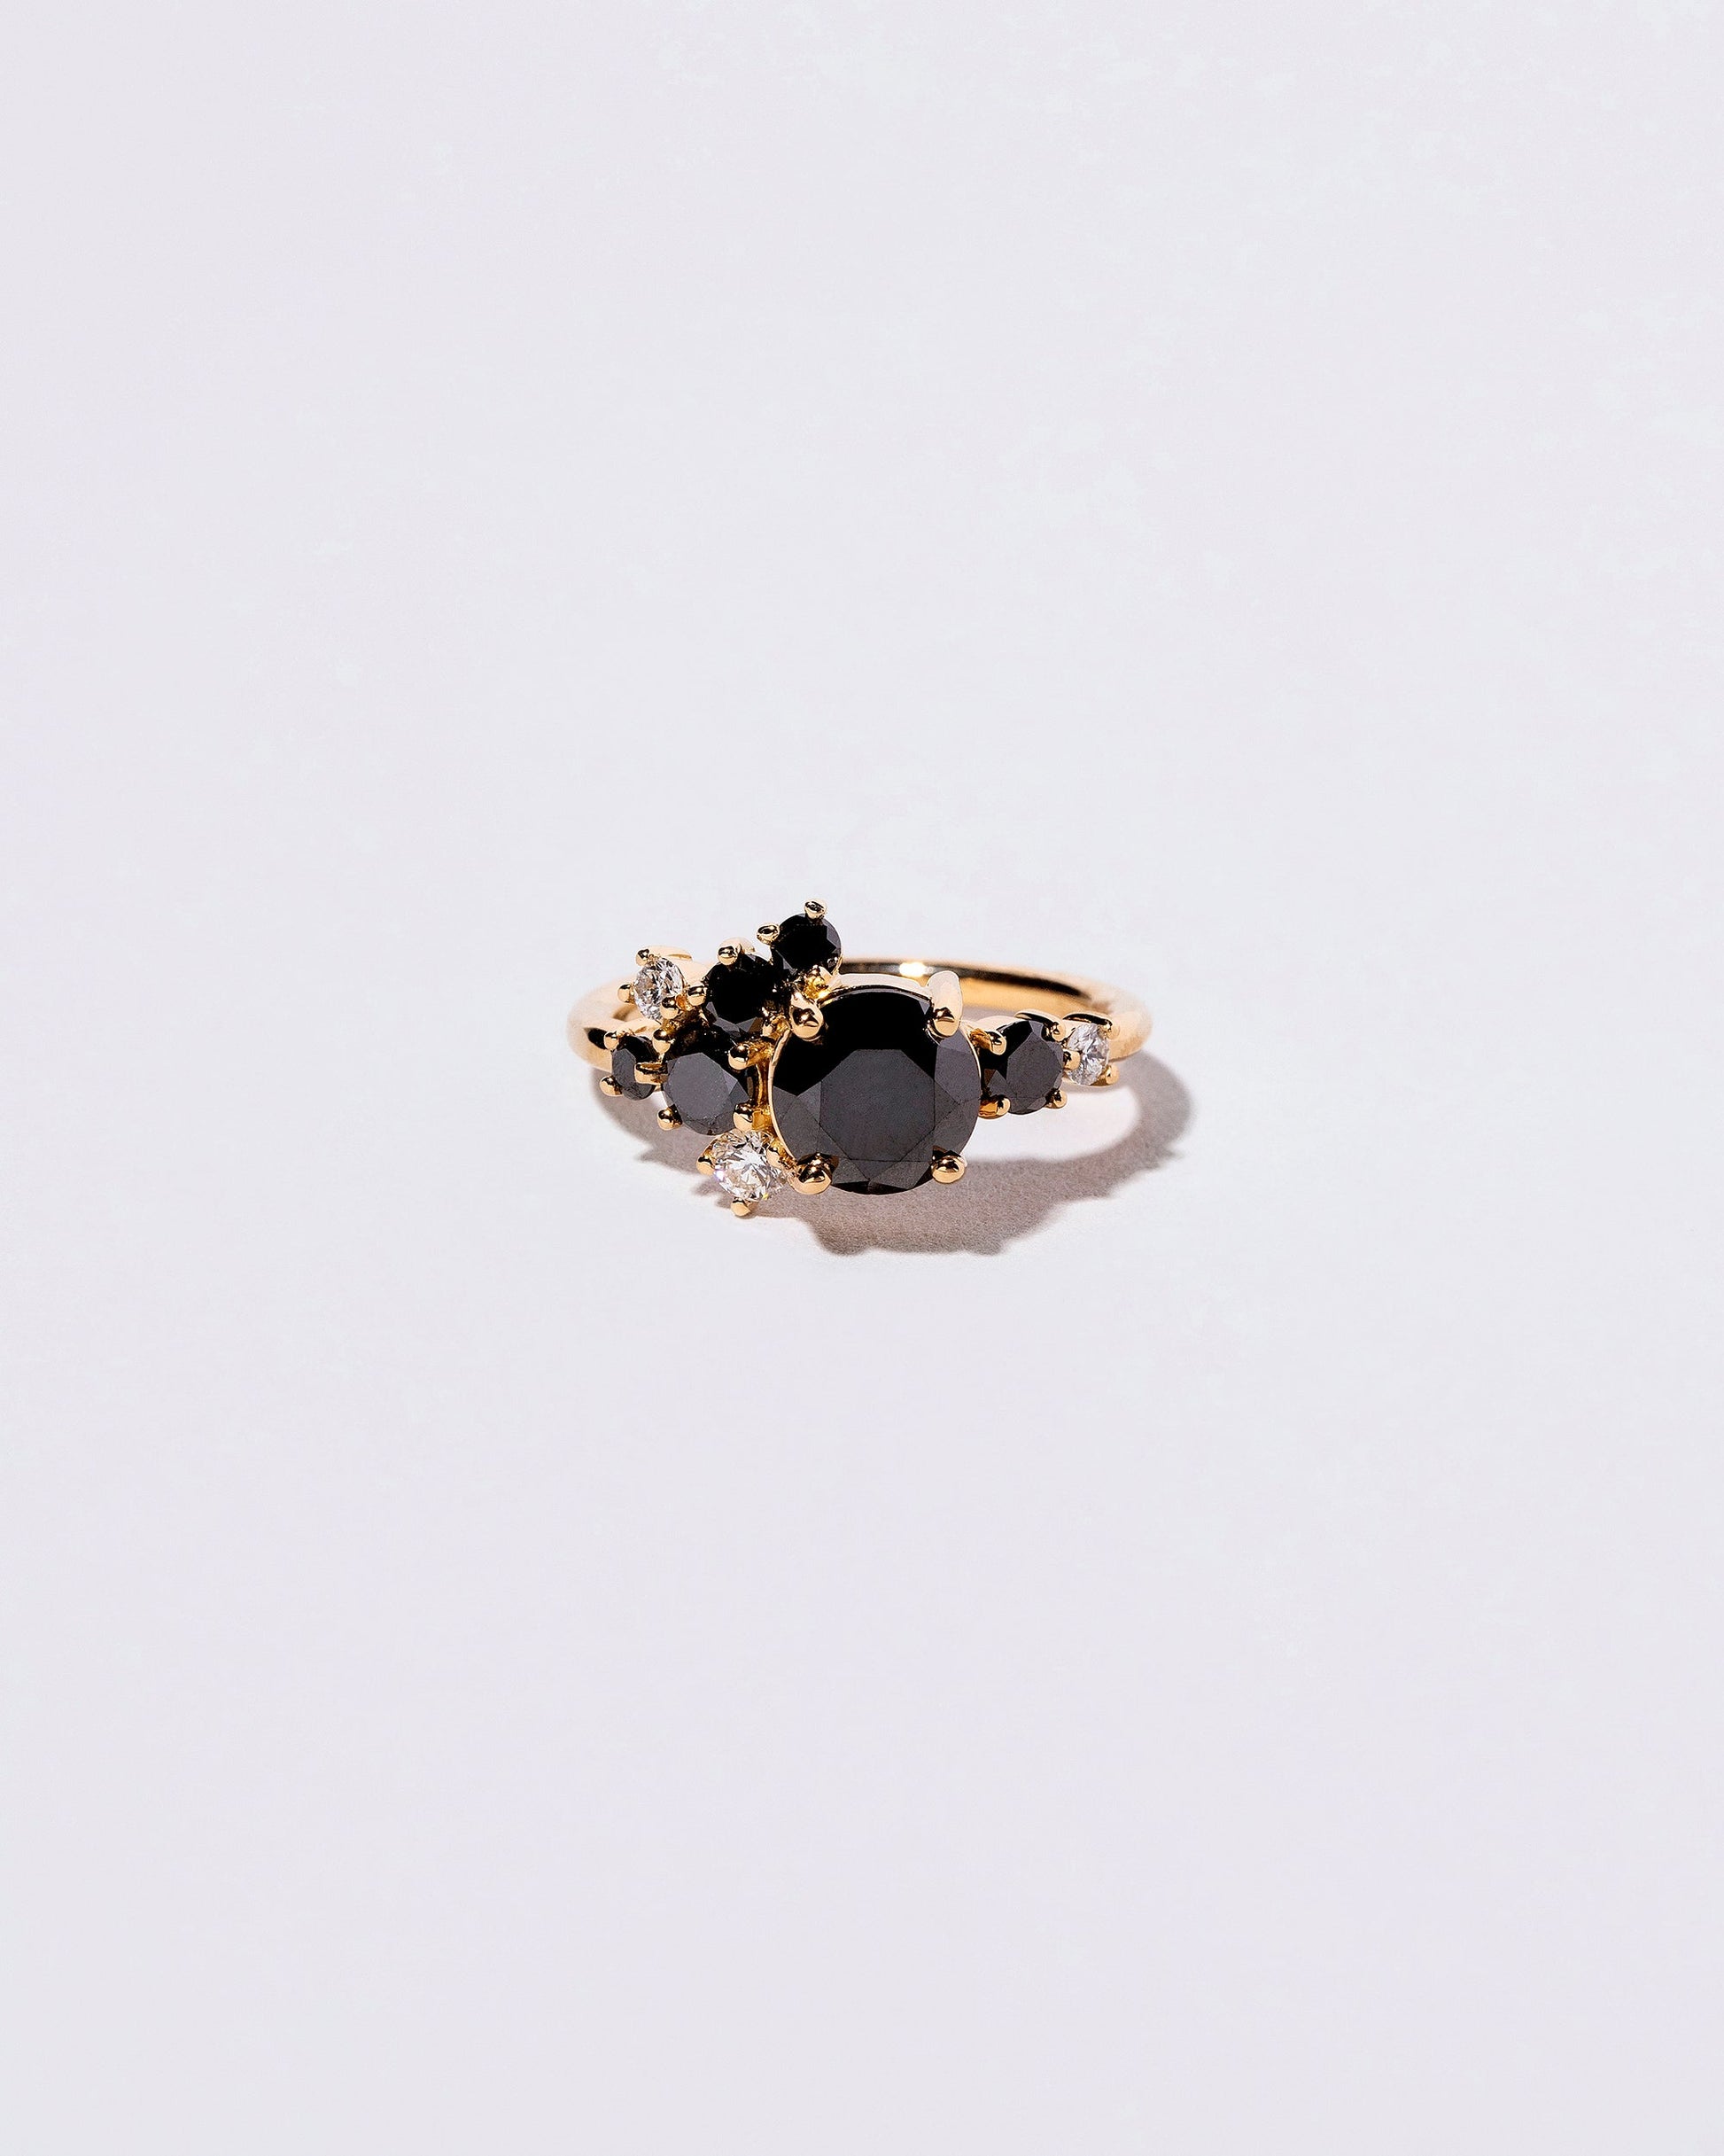  Vega Ring - Black & White Diamond on light color background.